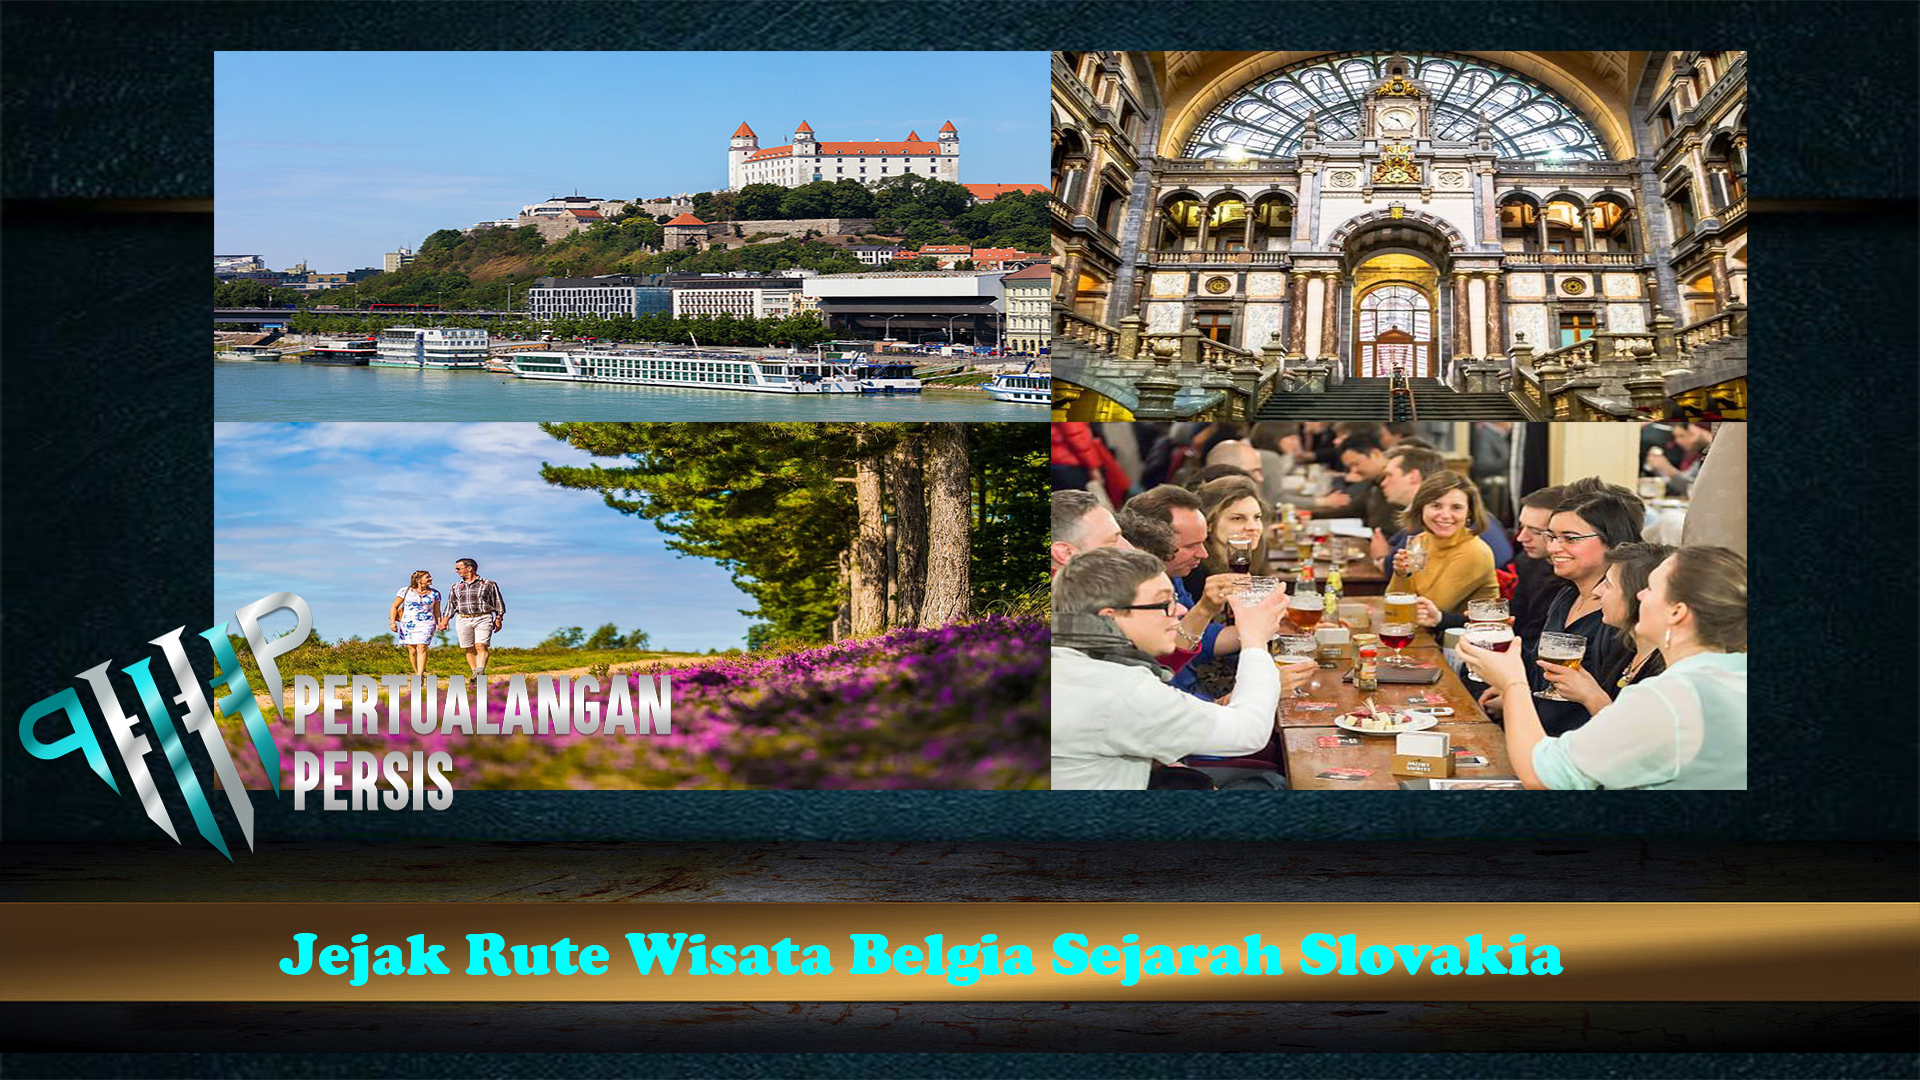 Jejak Rute Wisata Belgia Sejarah Slovakia